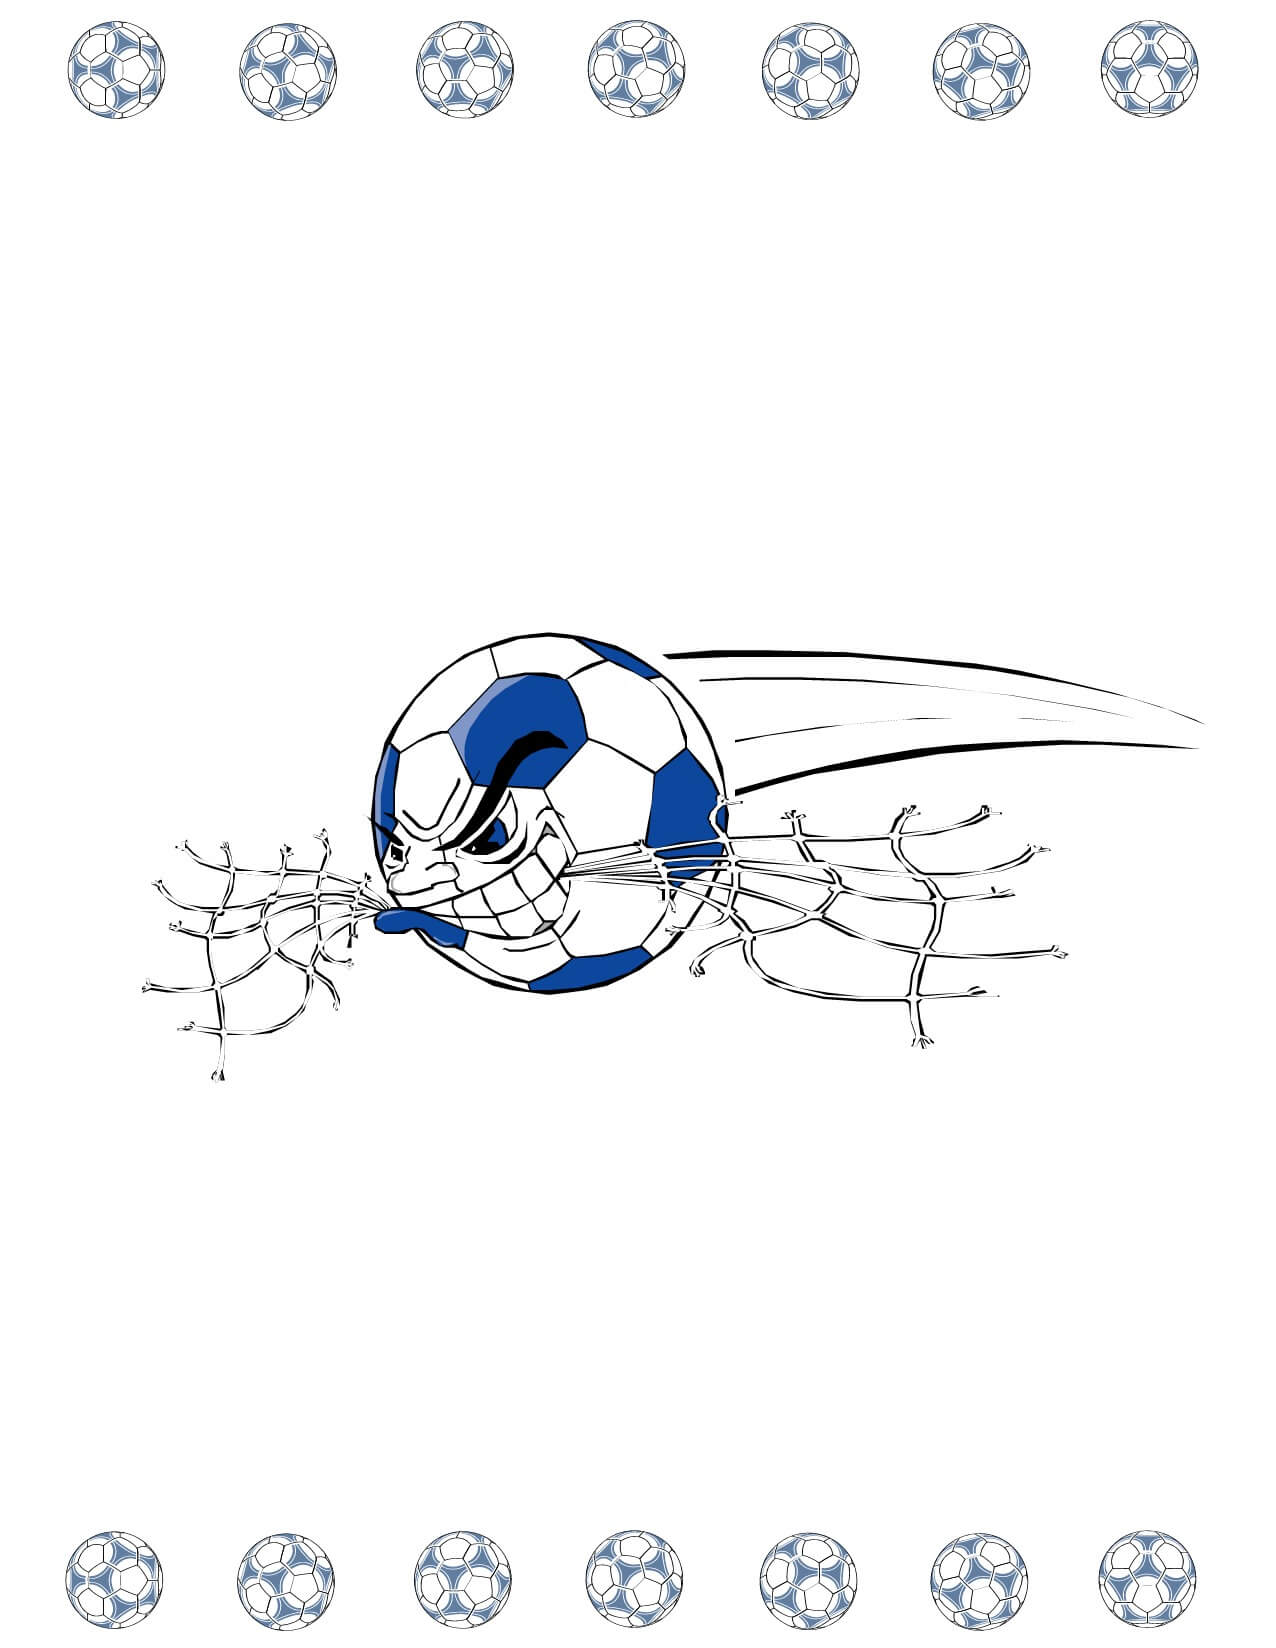 Soccer Award Certificate Maker: Make Personalized Soccer Awards In Soccer Award Certificate Template